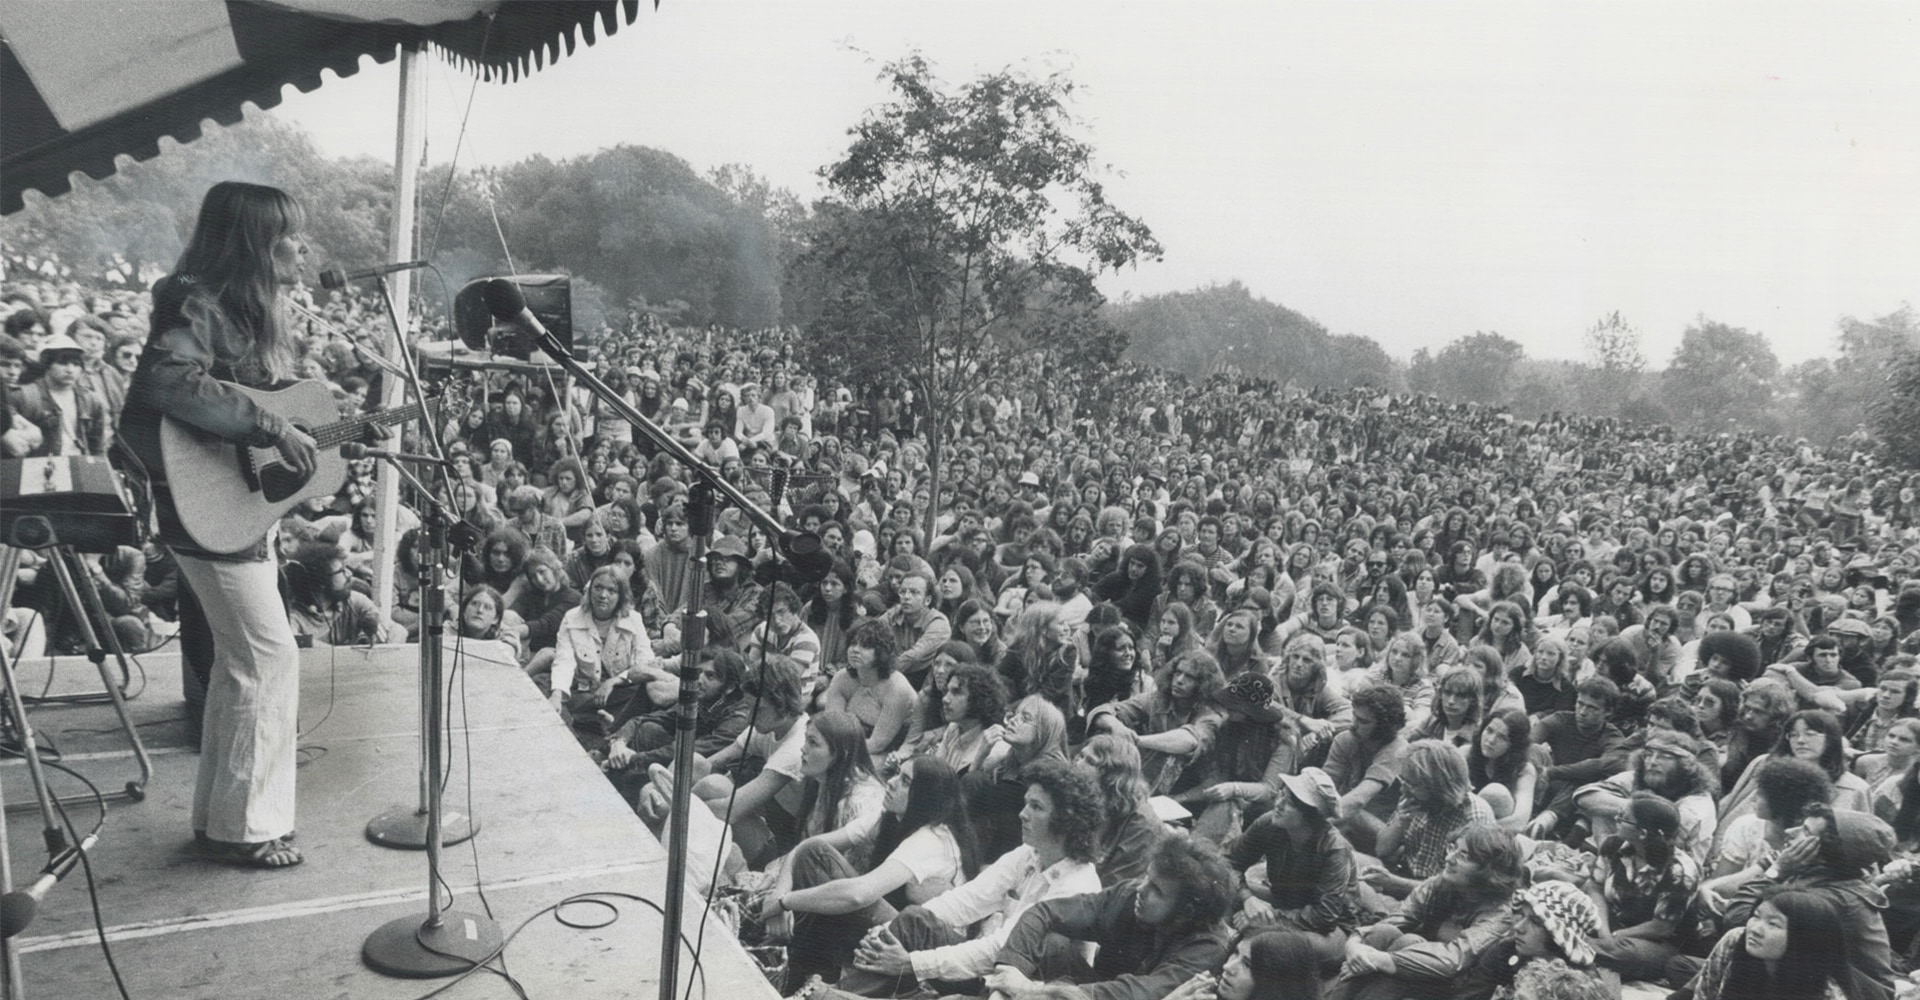 Une femme vêtue d’un chemisier et d’un pantalon tient une guitare debout sur une scène extérieure. Elle chante dans un microphone pendant que des centaines de personnes la regardent.